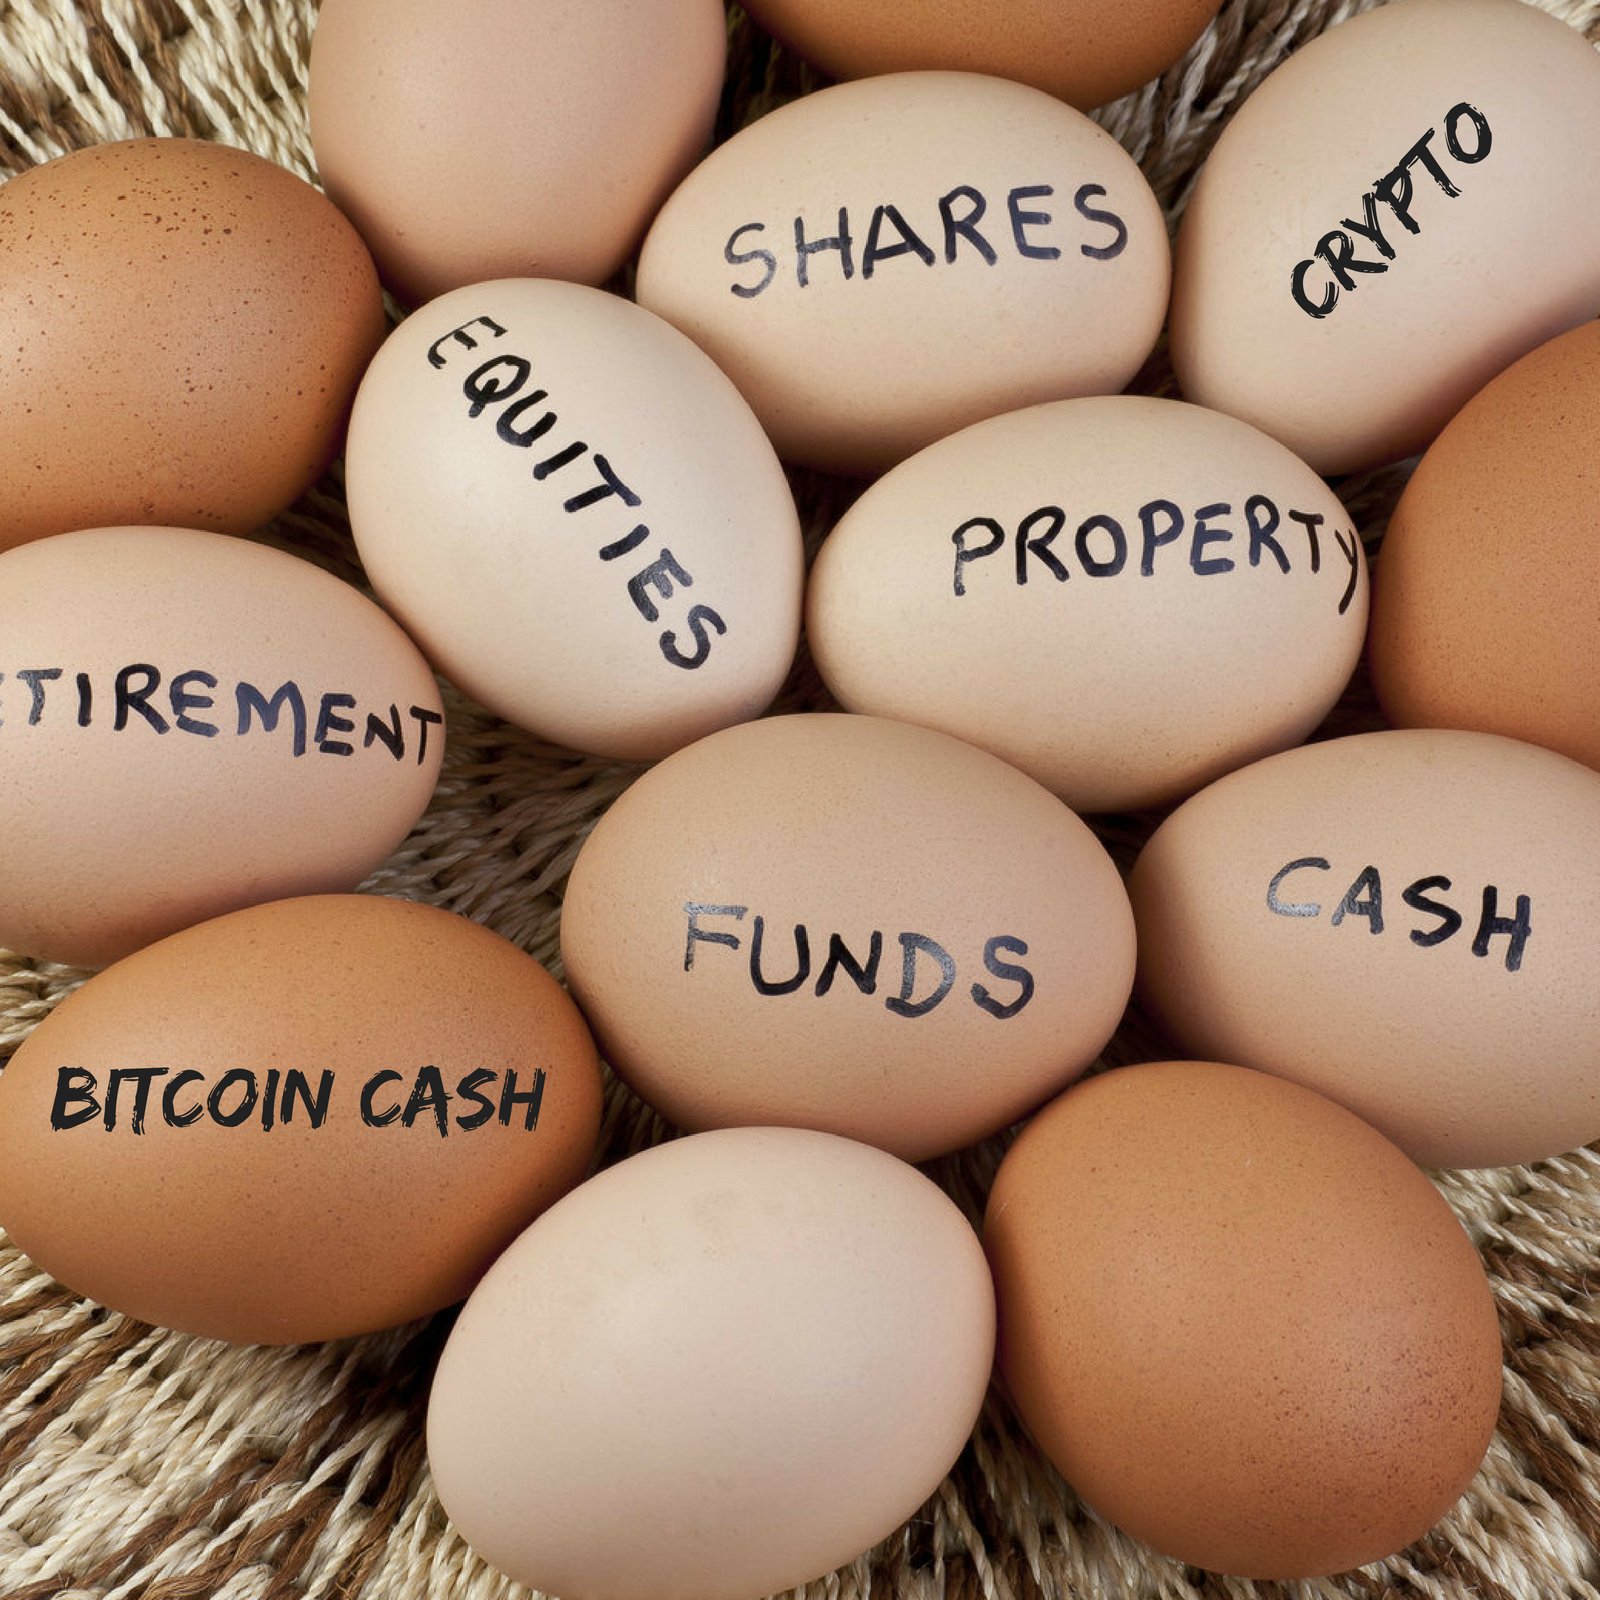 Add Crypto to Investment Portfolio: Enhance Return, Reduce Risk/Volatility